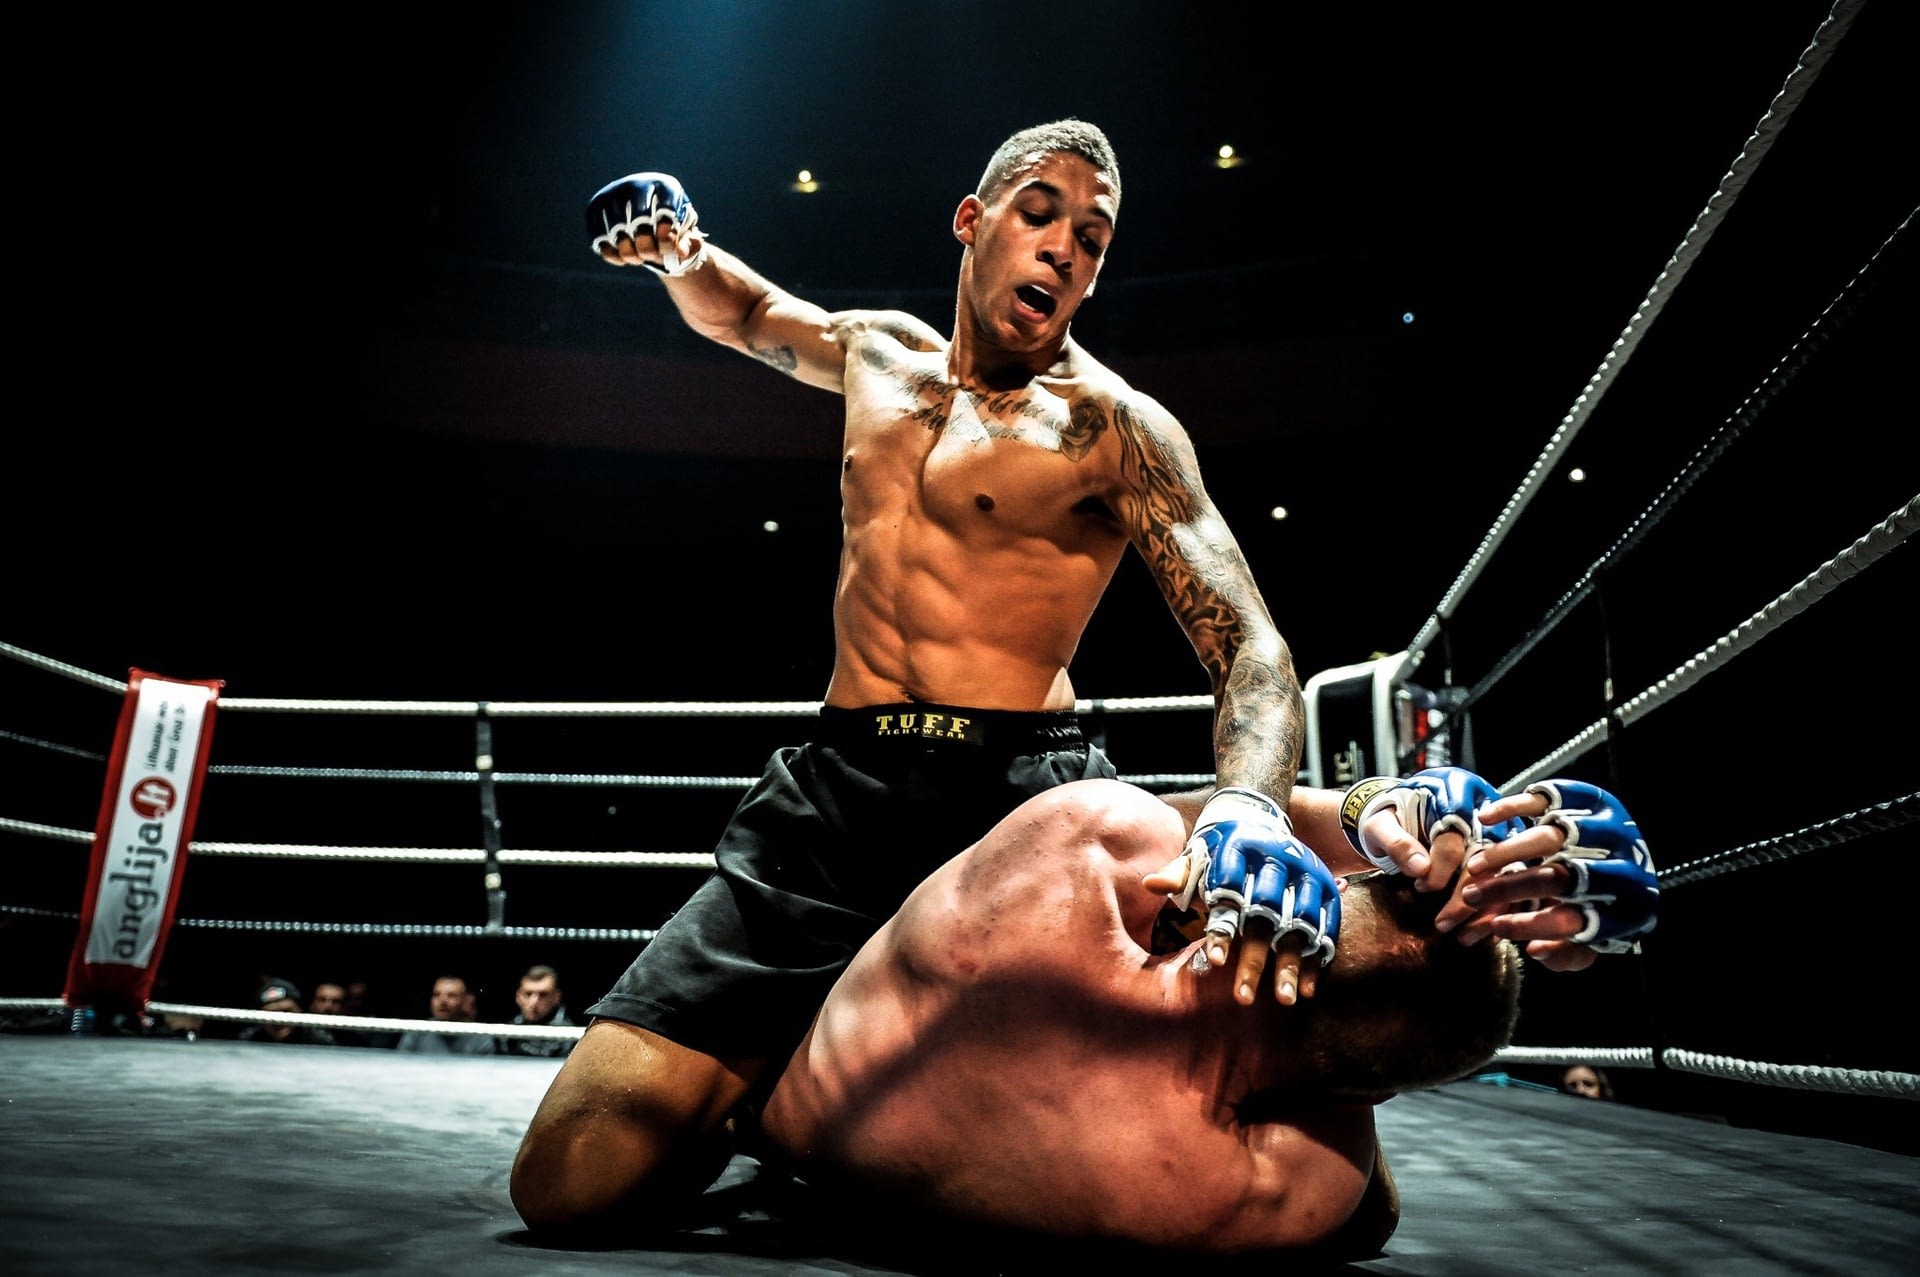 אימוני MMA מקצועיים לחימה משולבת אומנויות לחימה משולבות עילית פייטרס ישראל לוטה ליברה